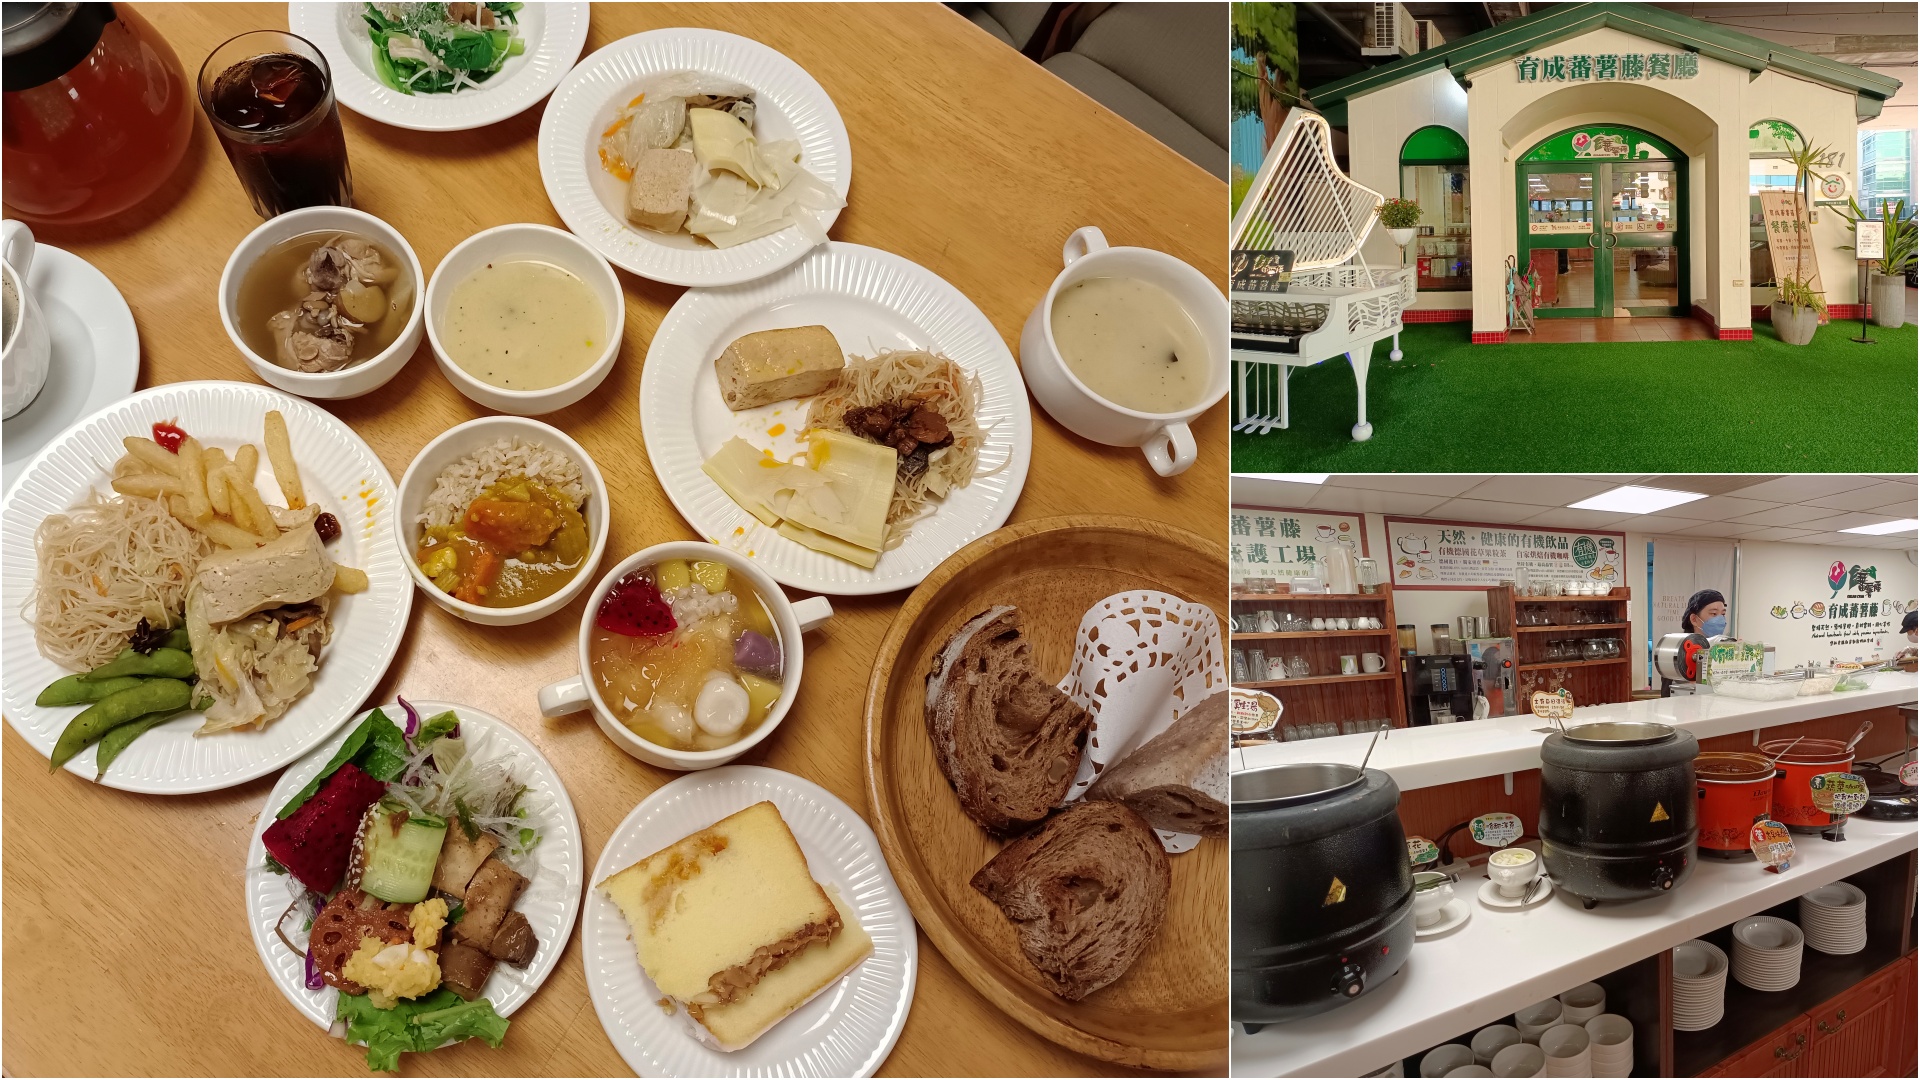 (東門捷運站)Coobi Café 鄉村果焙,用心烘焙的列日鬆餅~新產品搶先體驗 @Nancy將的生活筆計本